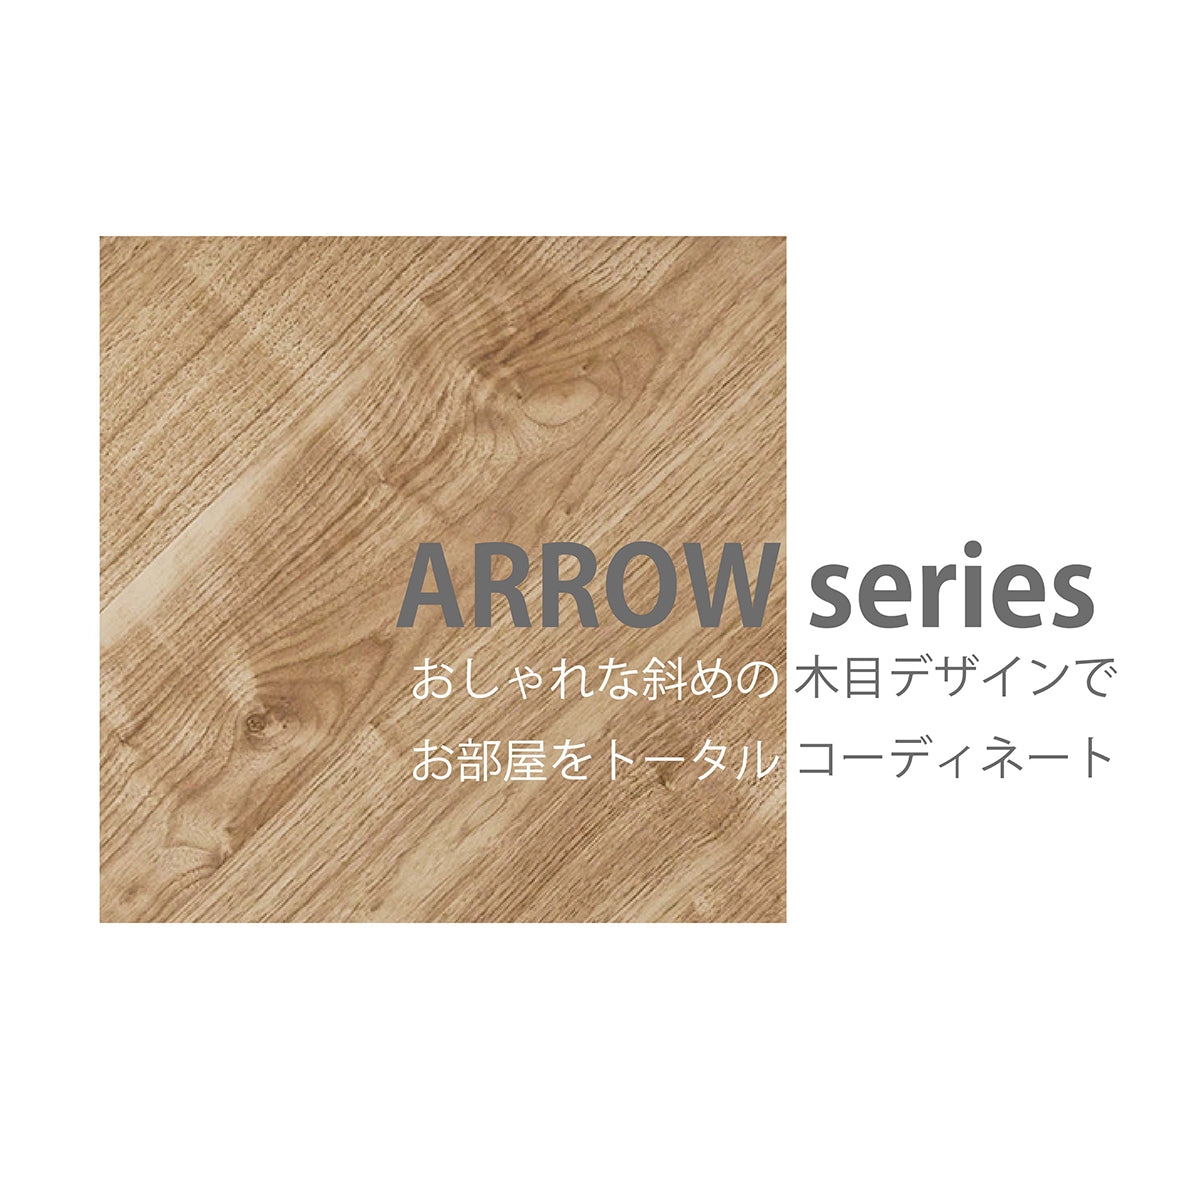 朝日木材加工 チェスト Arrow 幅59cm ナチュラル 矢張り風 ARC-9060CH 奥行39.5×高さ84.8cm 